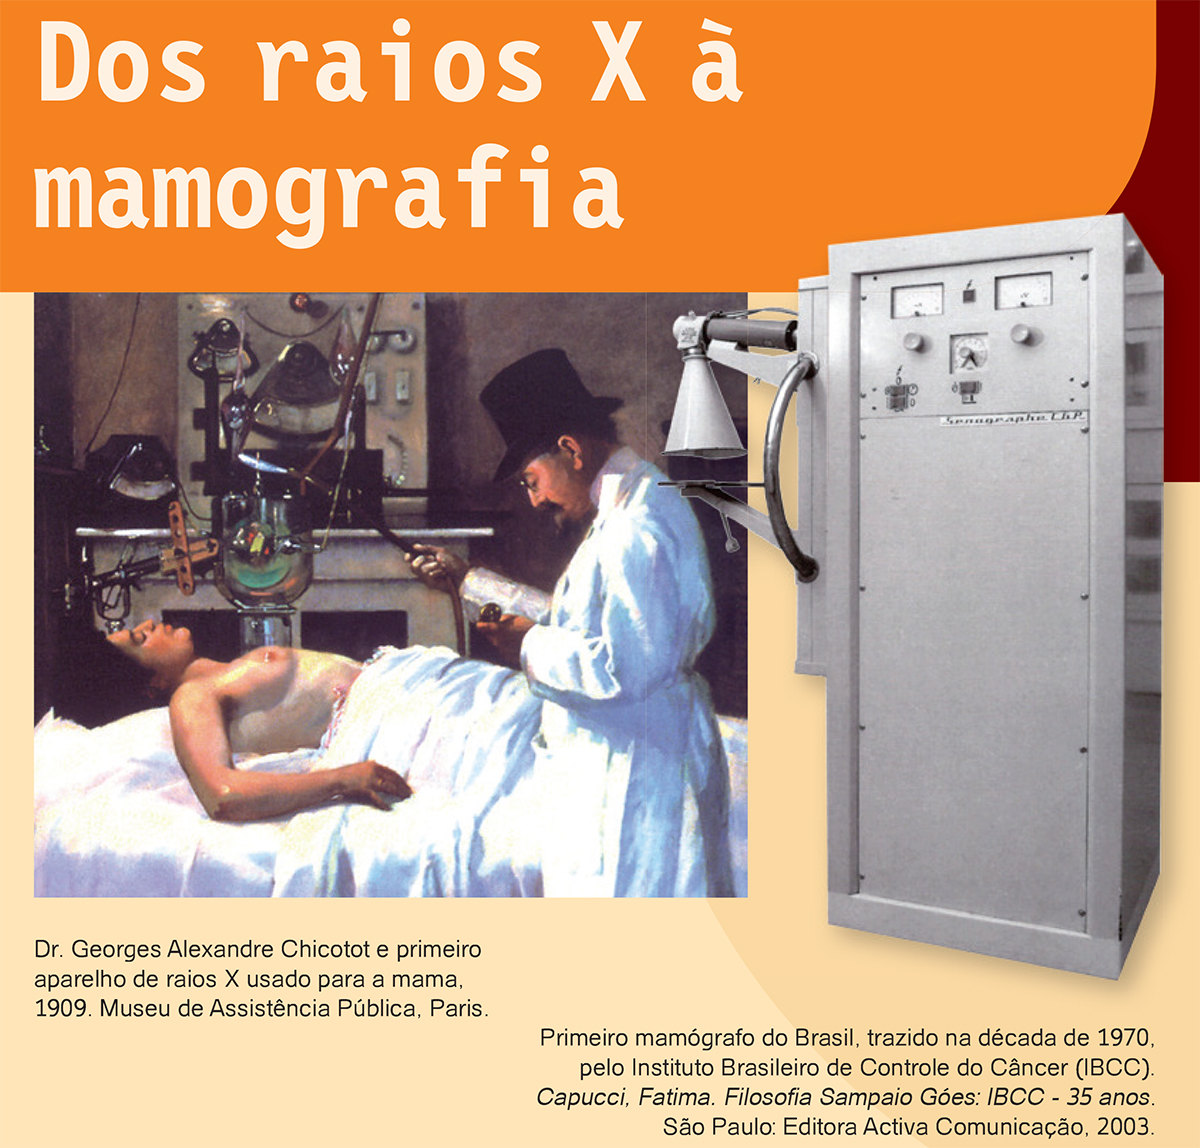 Cartaz mostra equipamento para mamografia